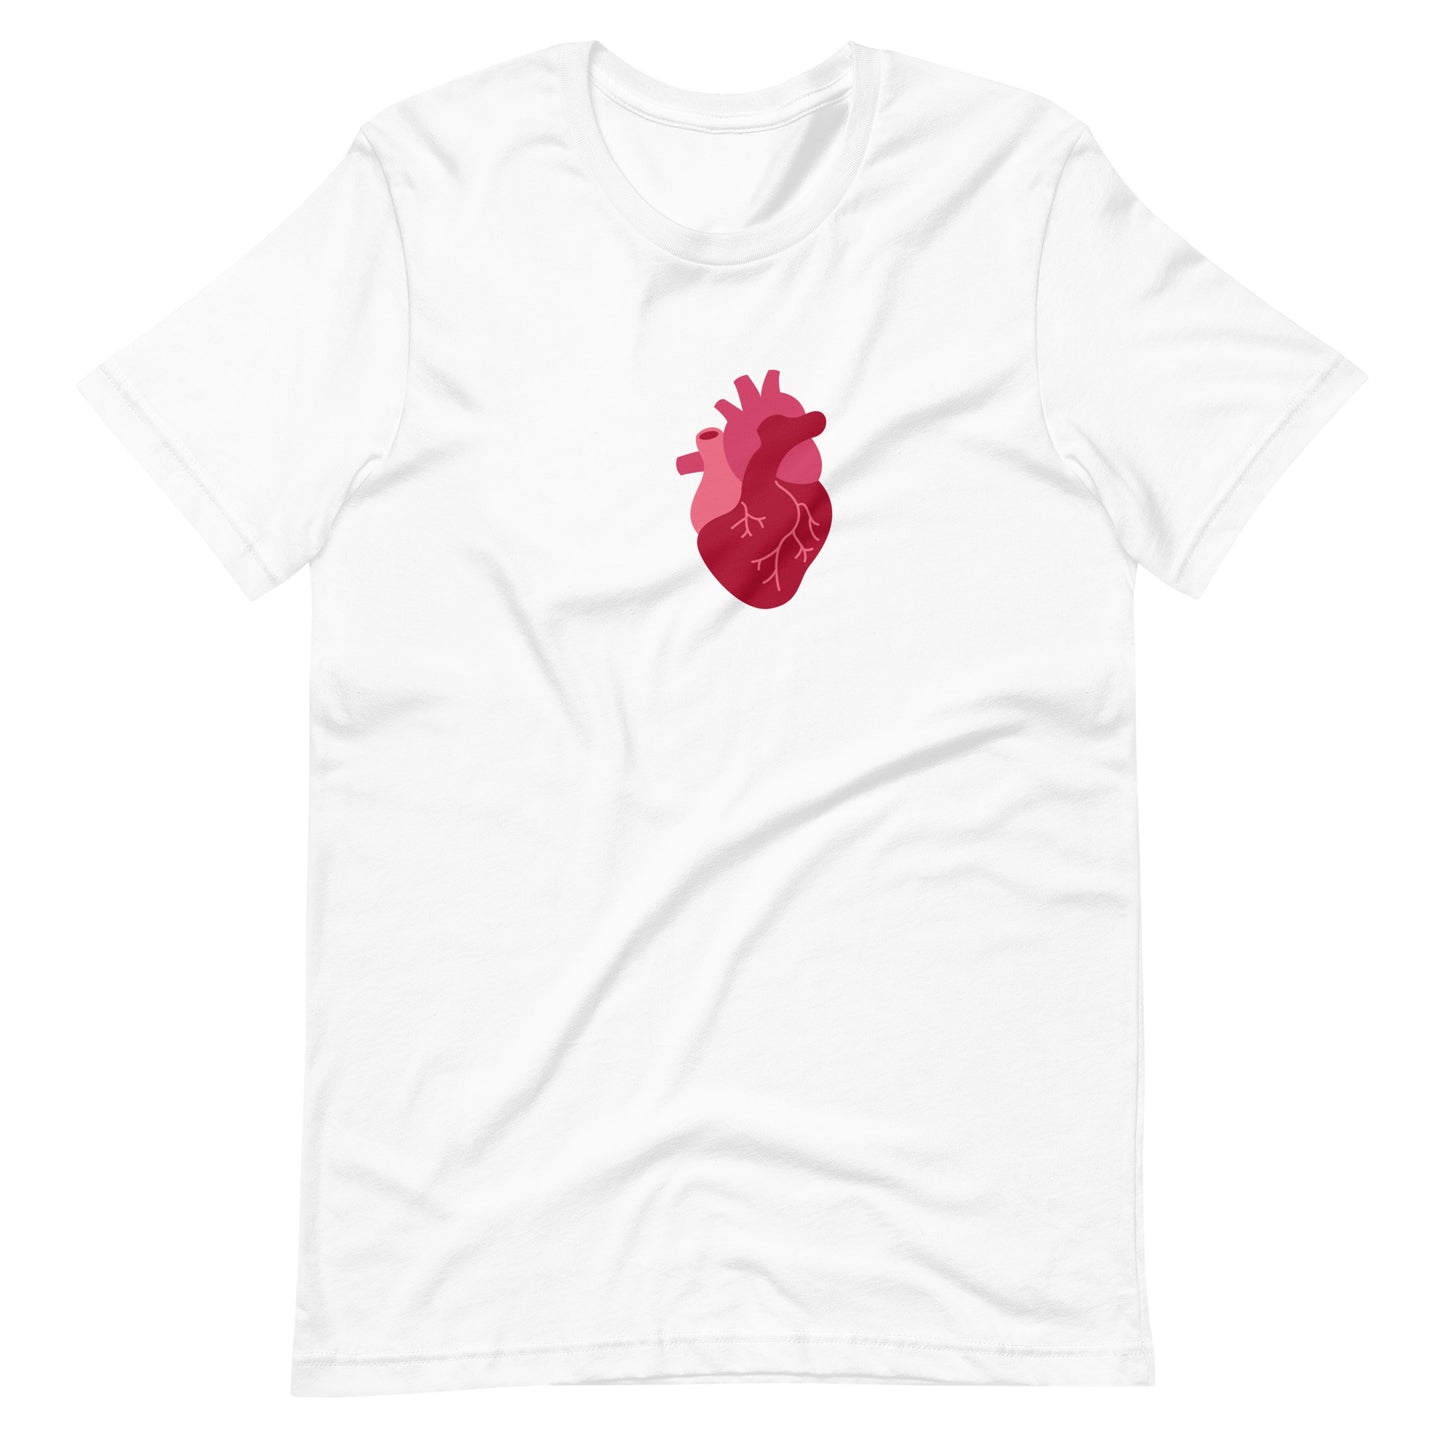 Anatomy, Heart, Cardiology, Cardiologist, EKG, Doctor, Medical Student, Resident, Nurse, Hospital, Cardiac, Cardiology, Funny Doctor Shirt